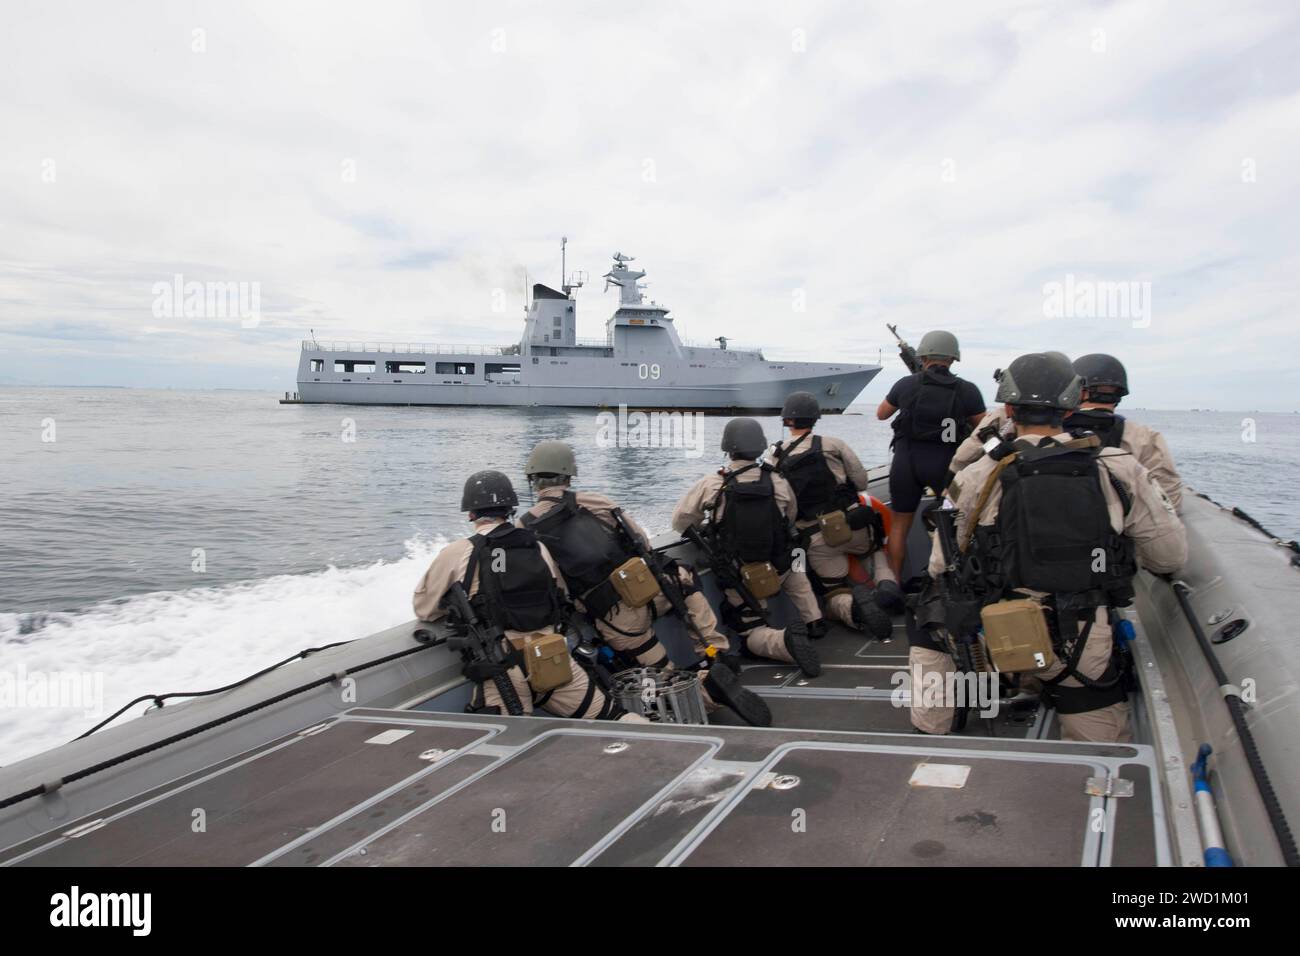 I marinai si preparano a condurre una visita, imbarco, ricerca e sequestro con la nave della Royal Brunei Navy Patrol Daruttaqwa. Foto Stock